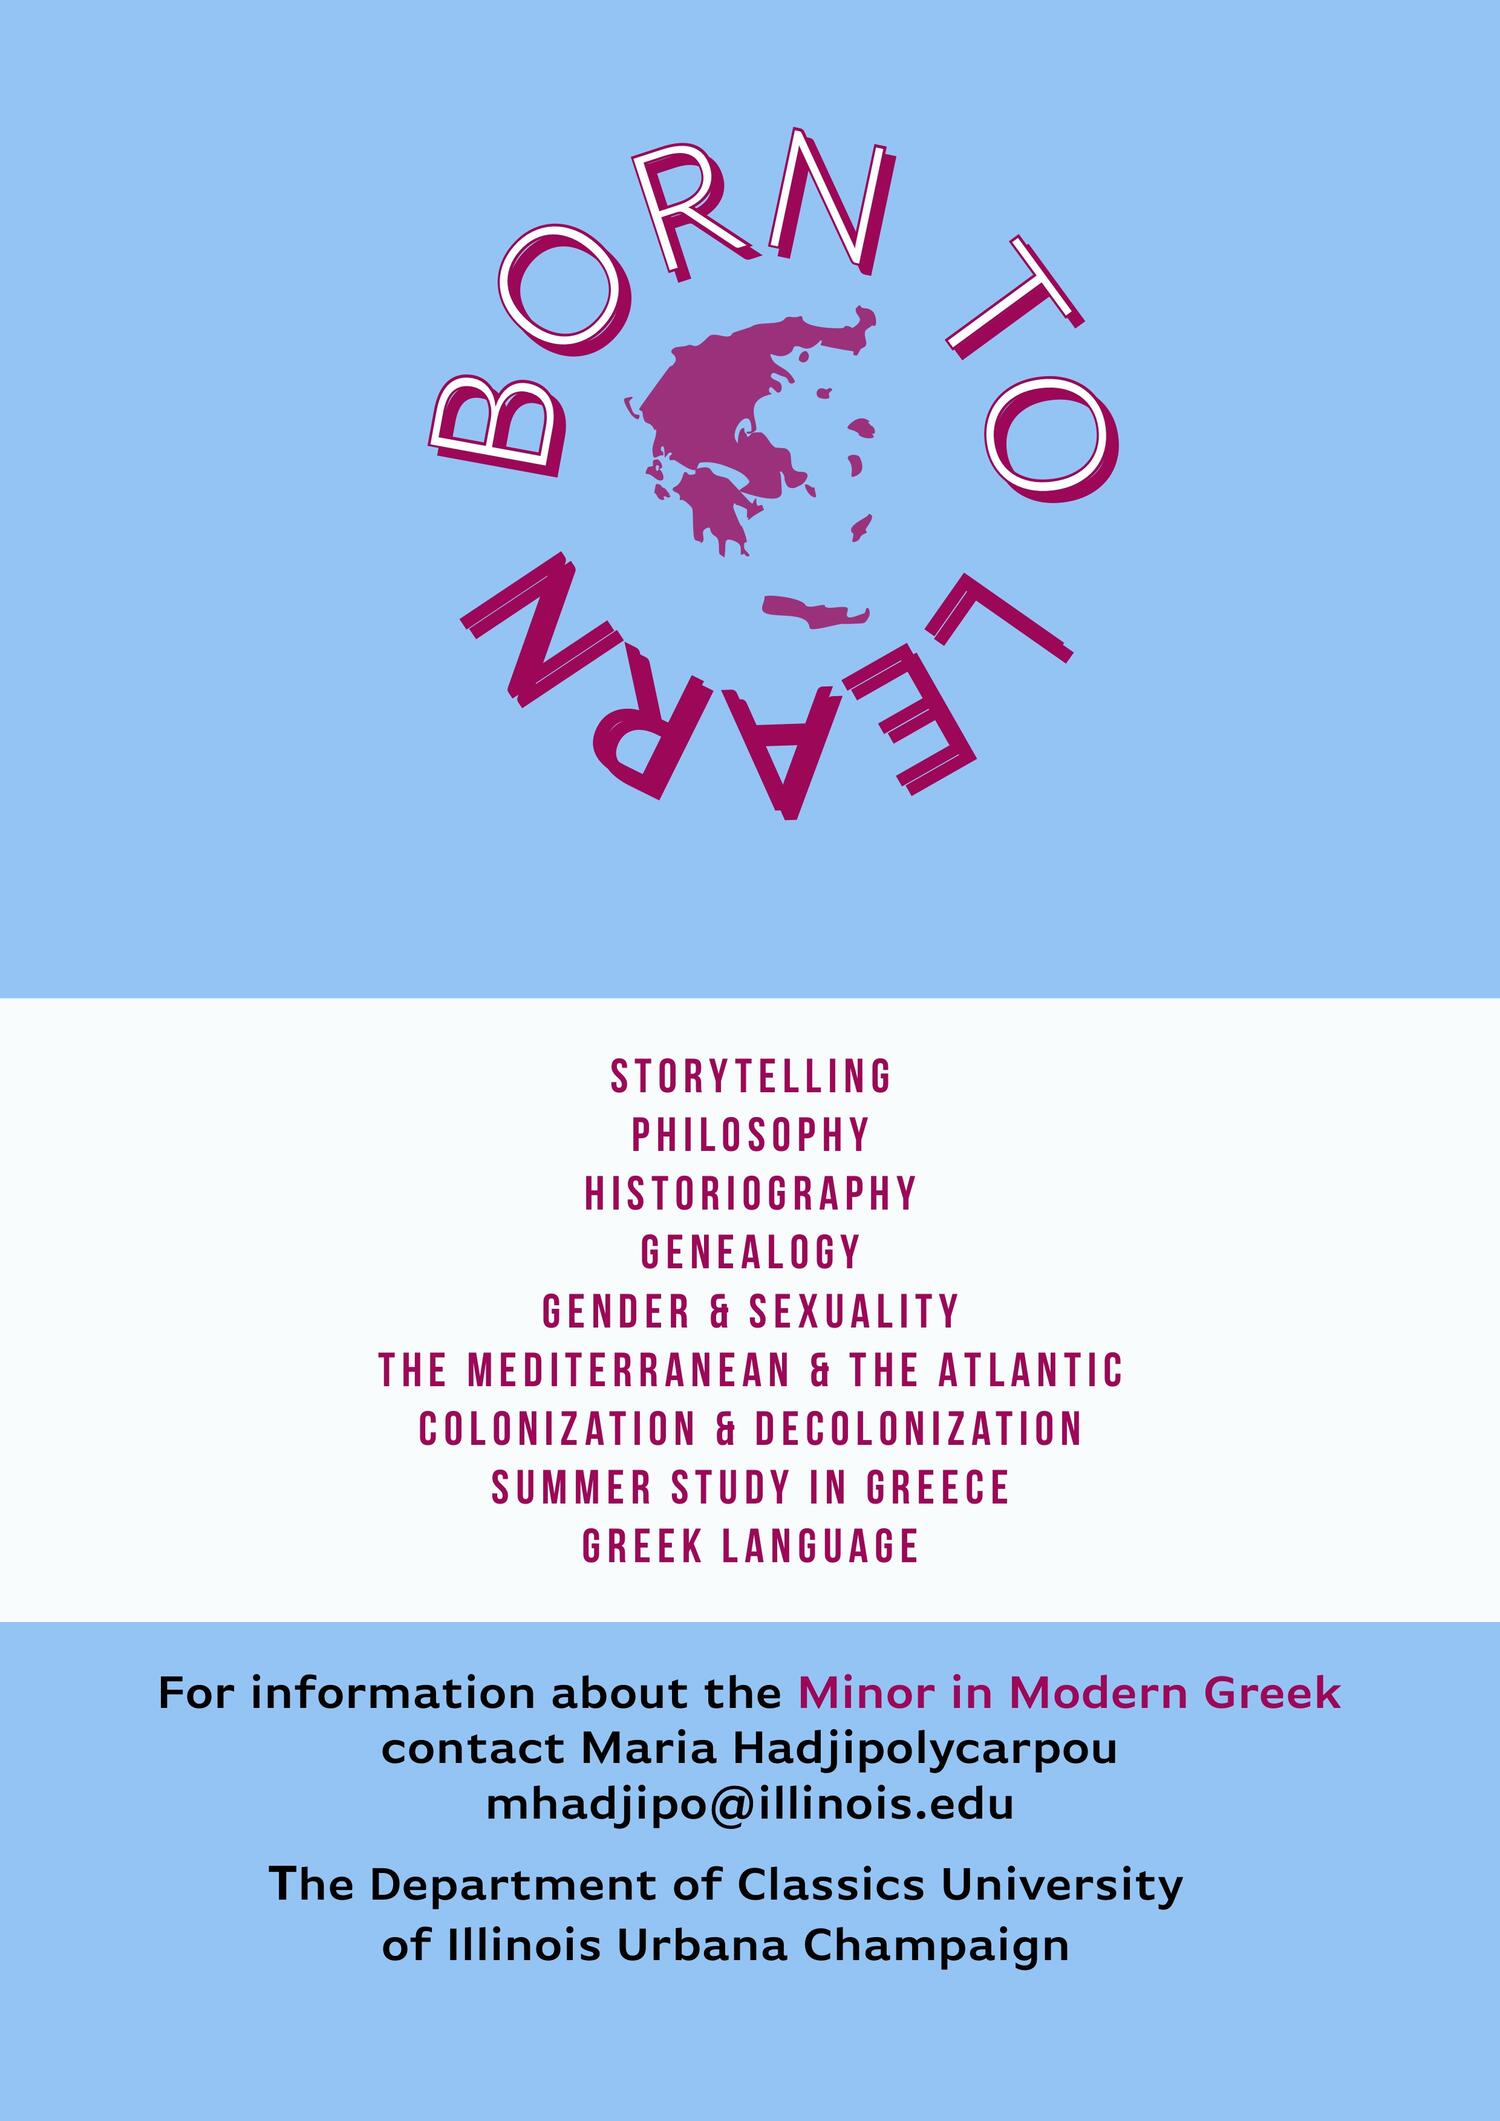 Minor in Modern Greek